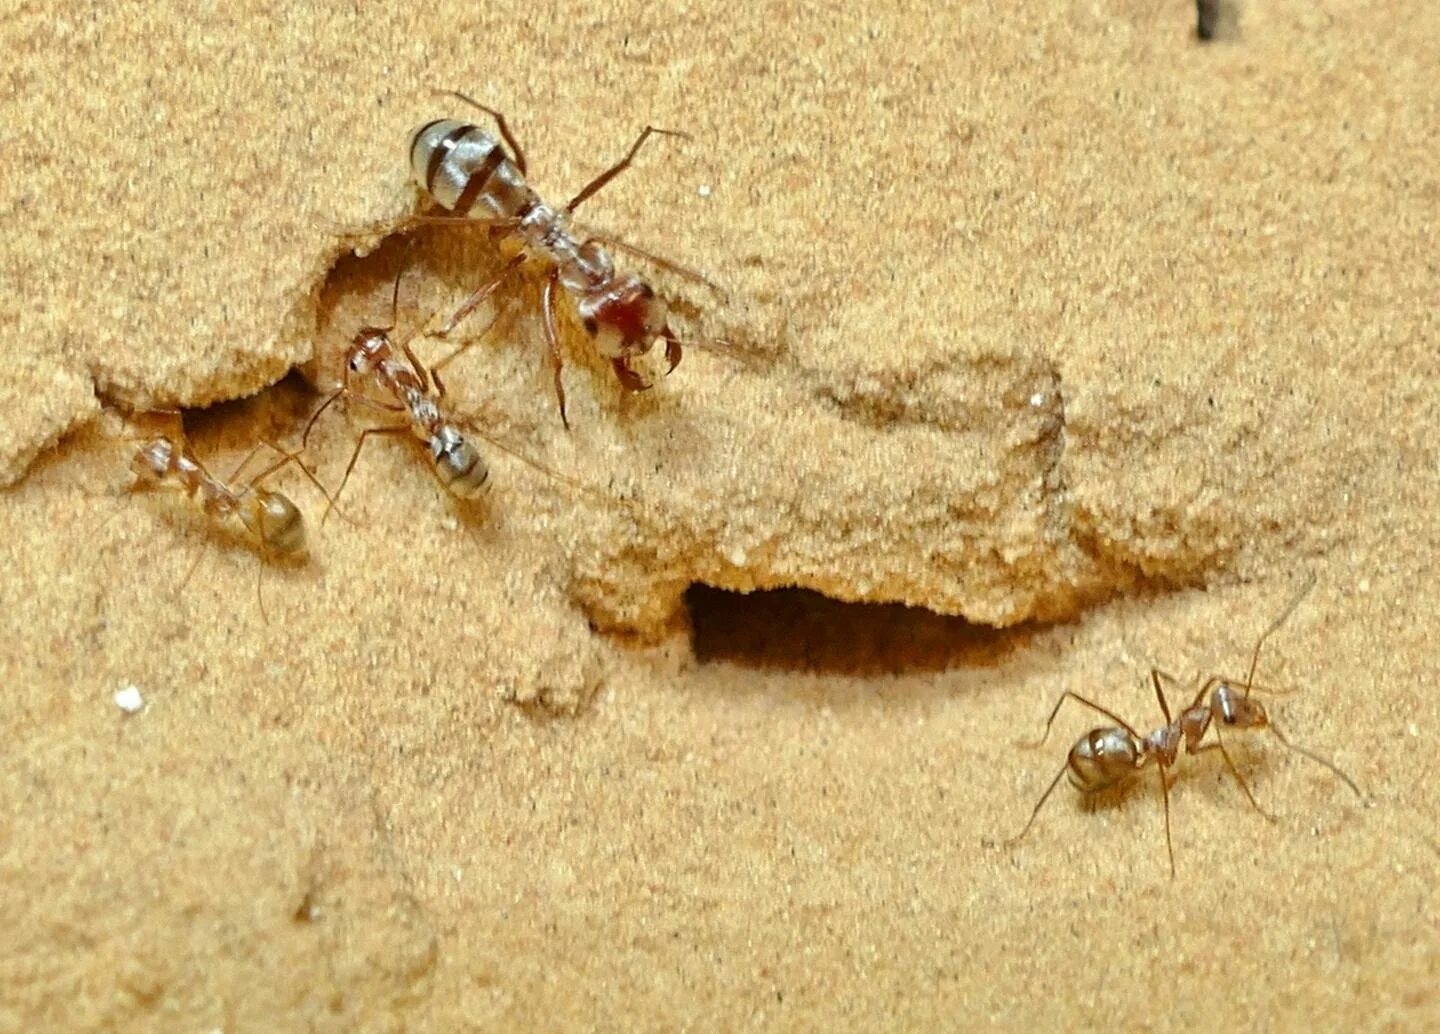 Скорость муравья м мин. Cataglyphis bombycina. Сахарском Серебряном муравье (Cataglyphis bombycina).. Катаглифис муравьи Cataglyphis bombycina. Серебряные муравьи пустыни Сахары.